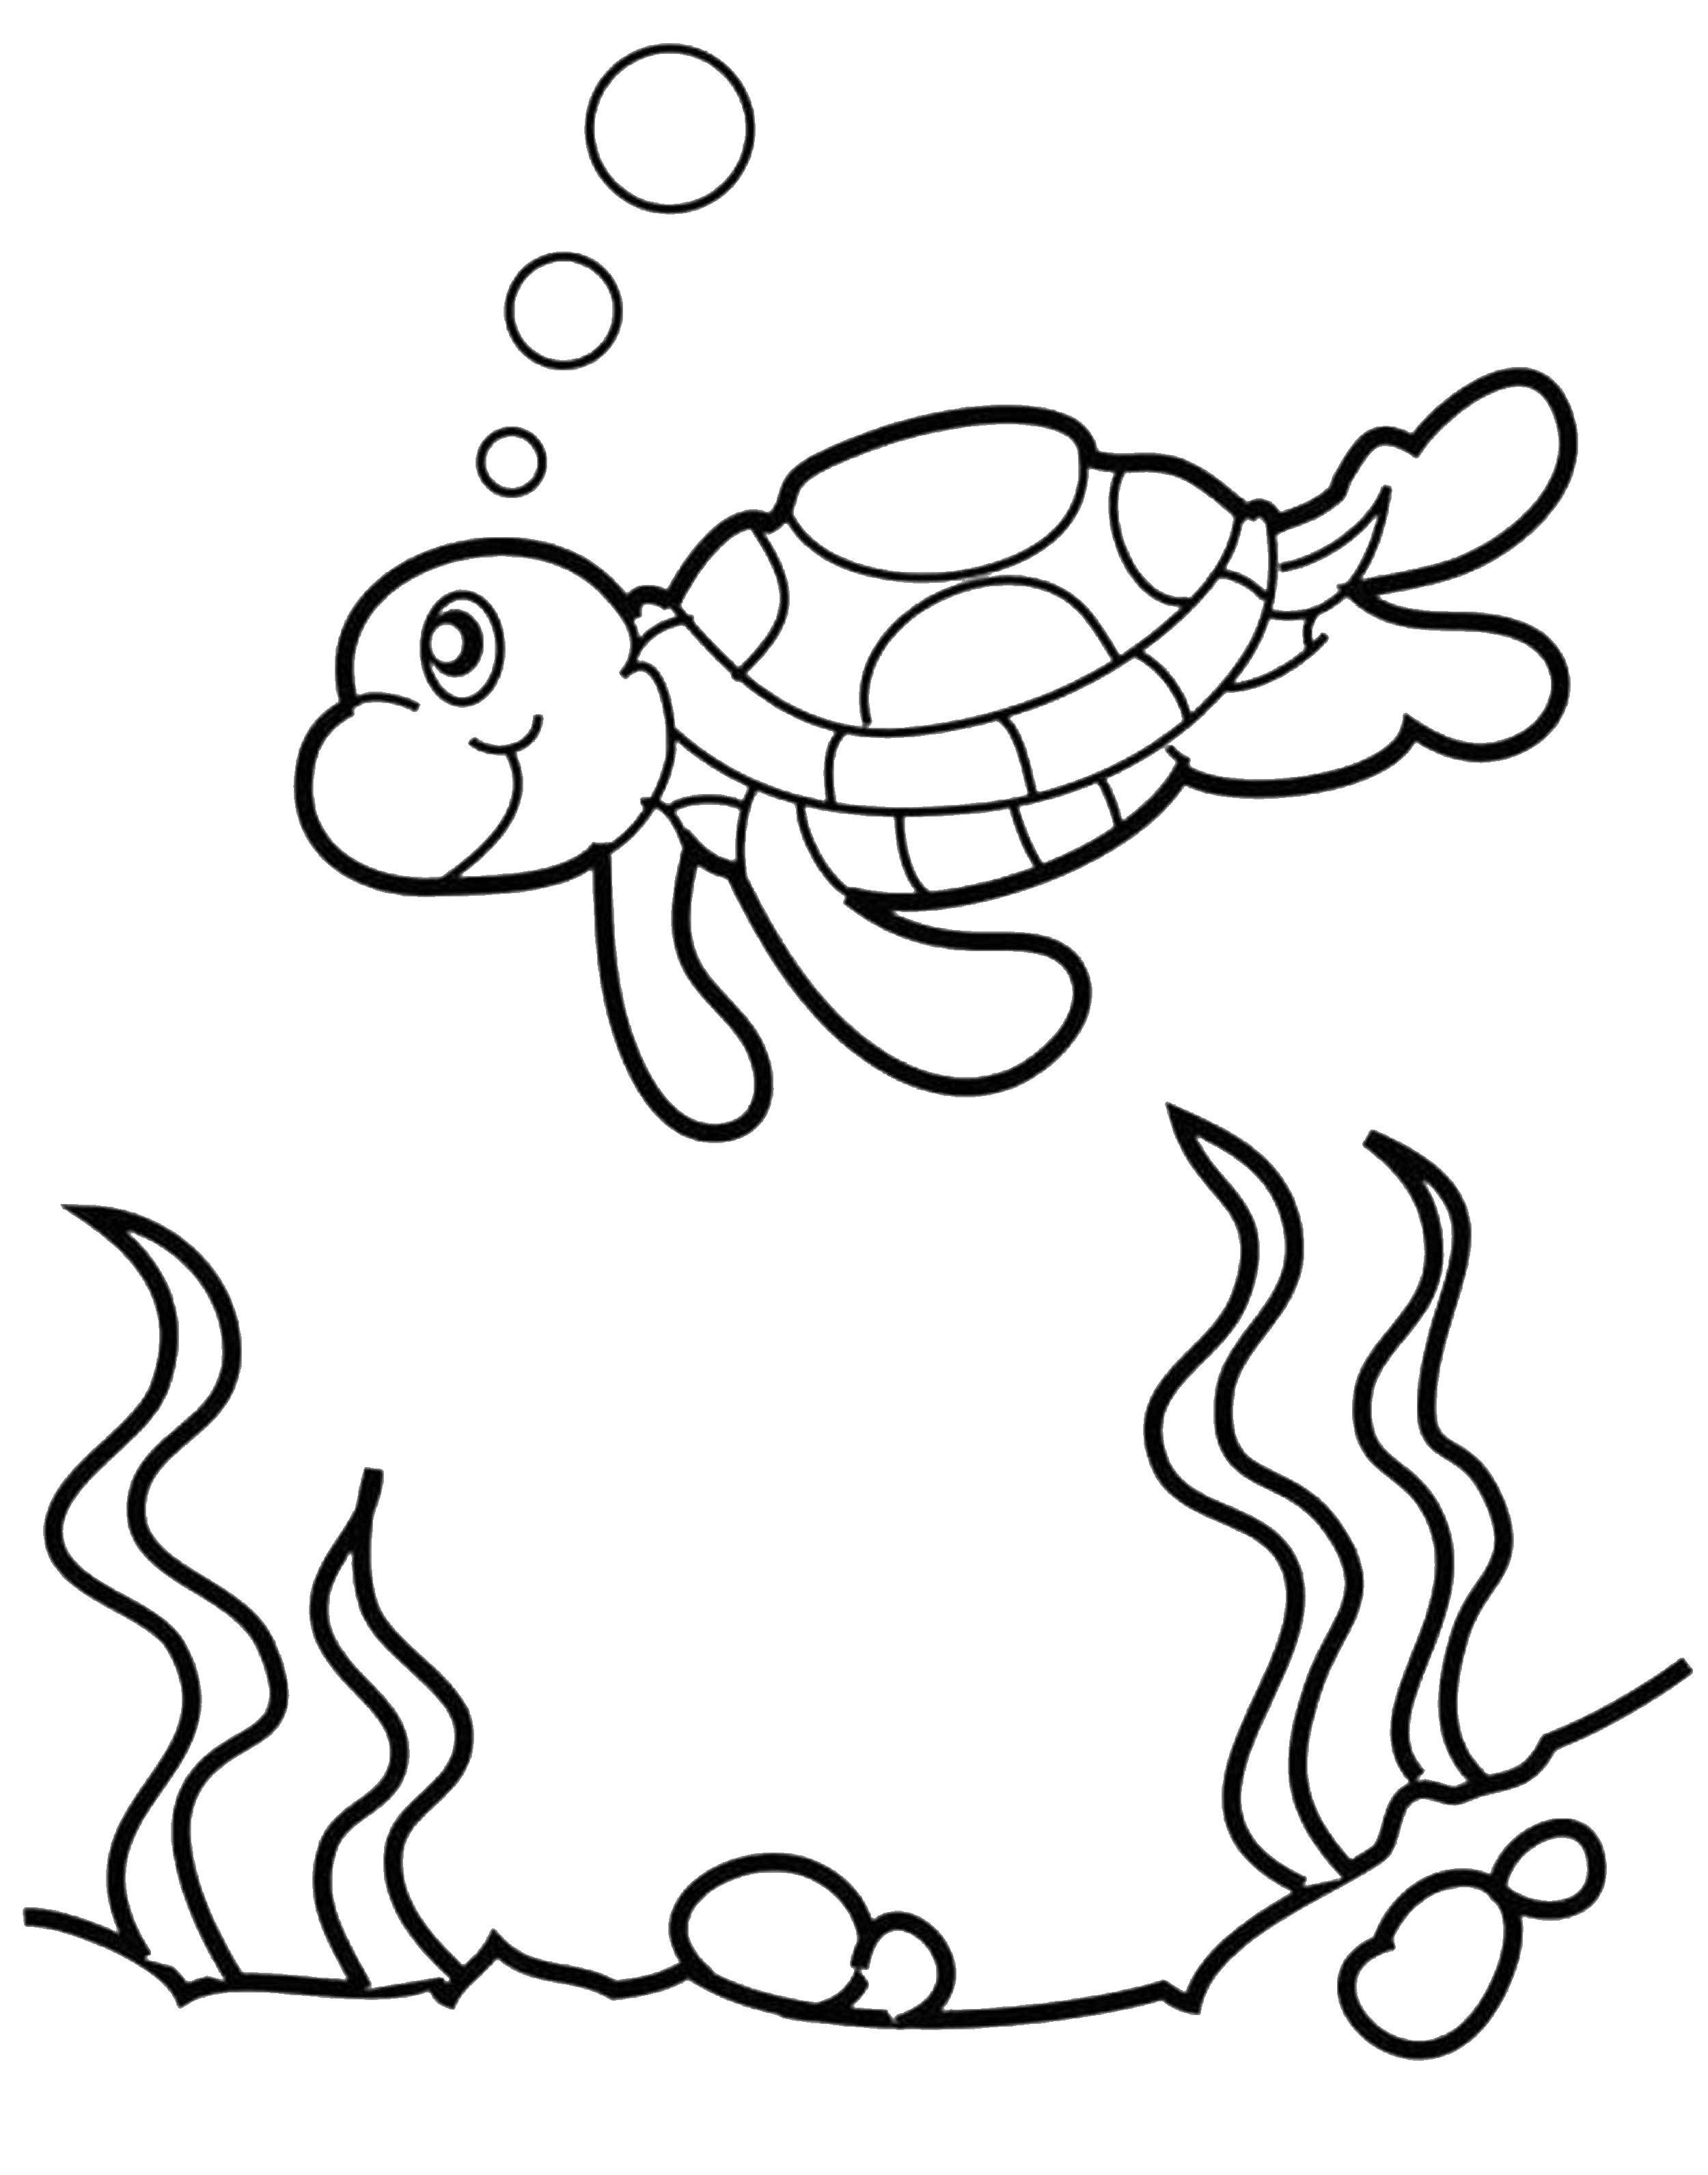 Название: Раскраска Черепашка в воде. Категория: Животные. Теги: животные, черепашка, море, вода.